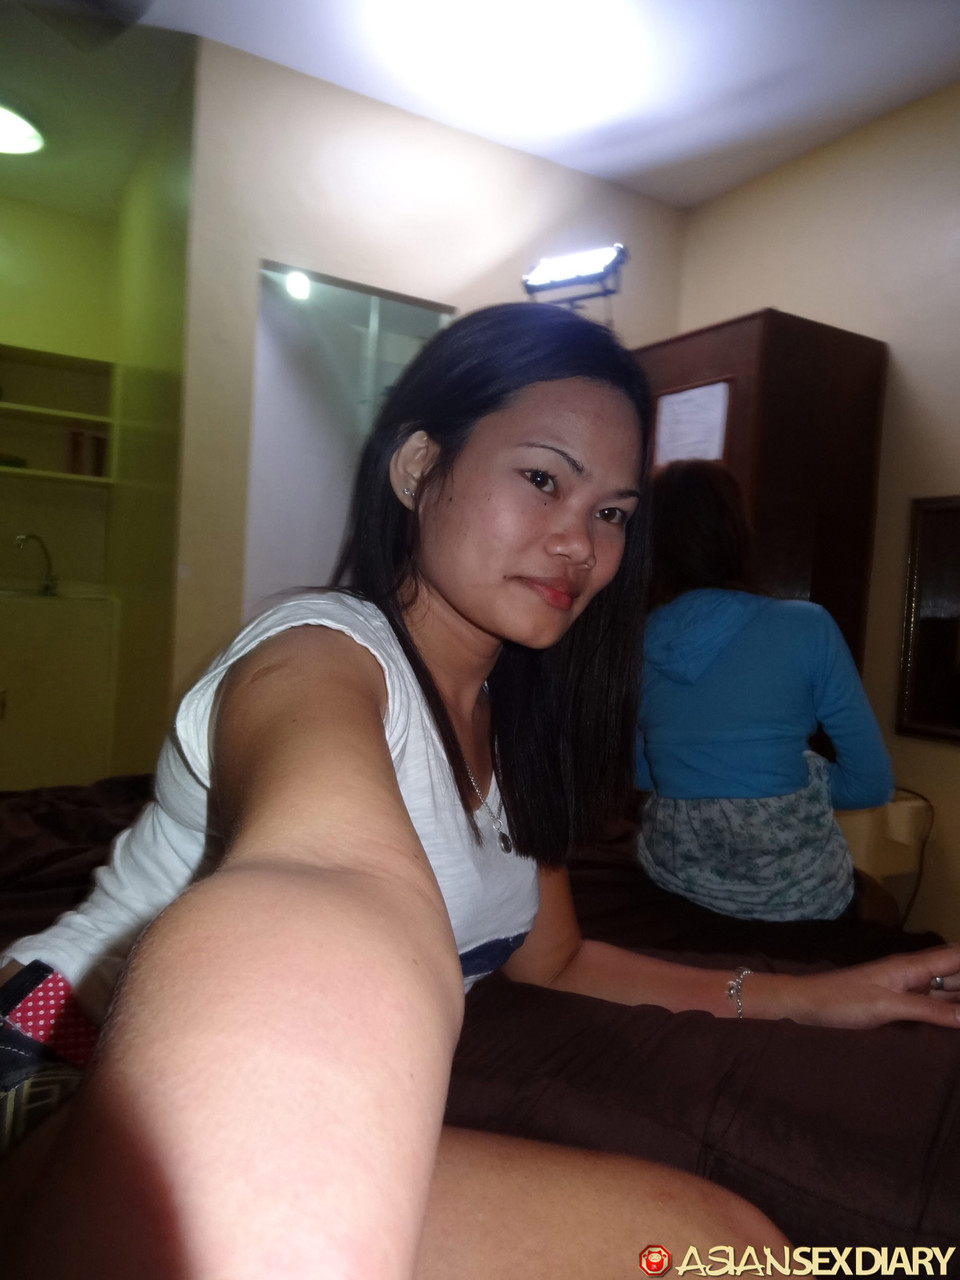 Horny Asian girls take selfies and fuck lucky tourist while enjoying free AC foto porno #422594962 | Asian Sex Diary Pics, Leann, Irish, Selfie, porno ponsel